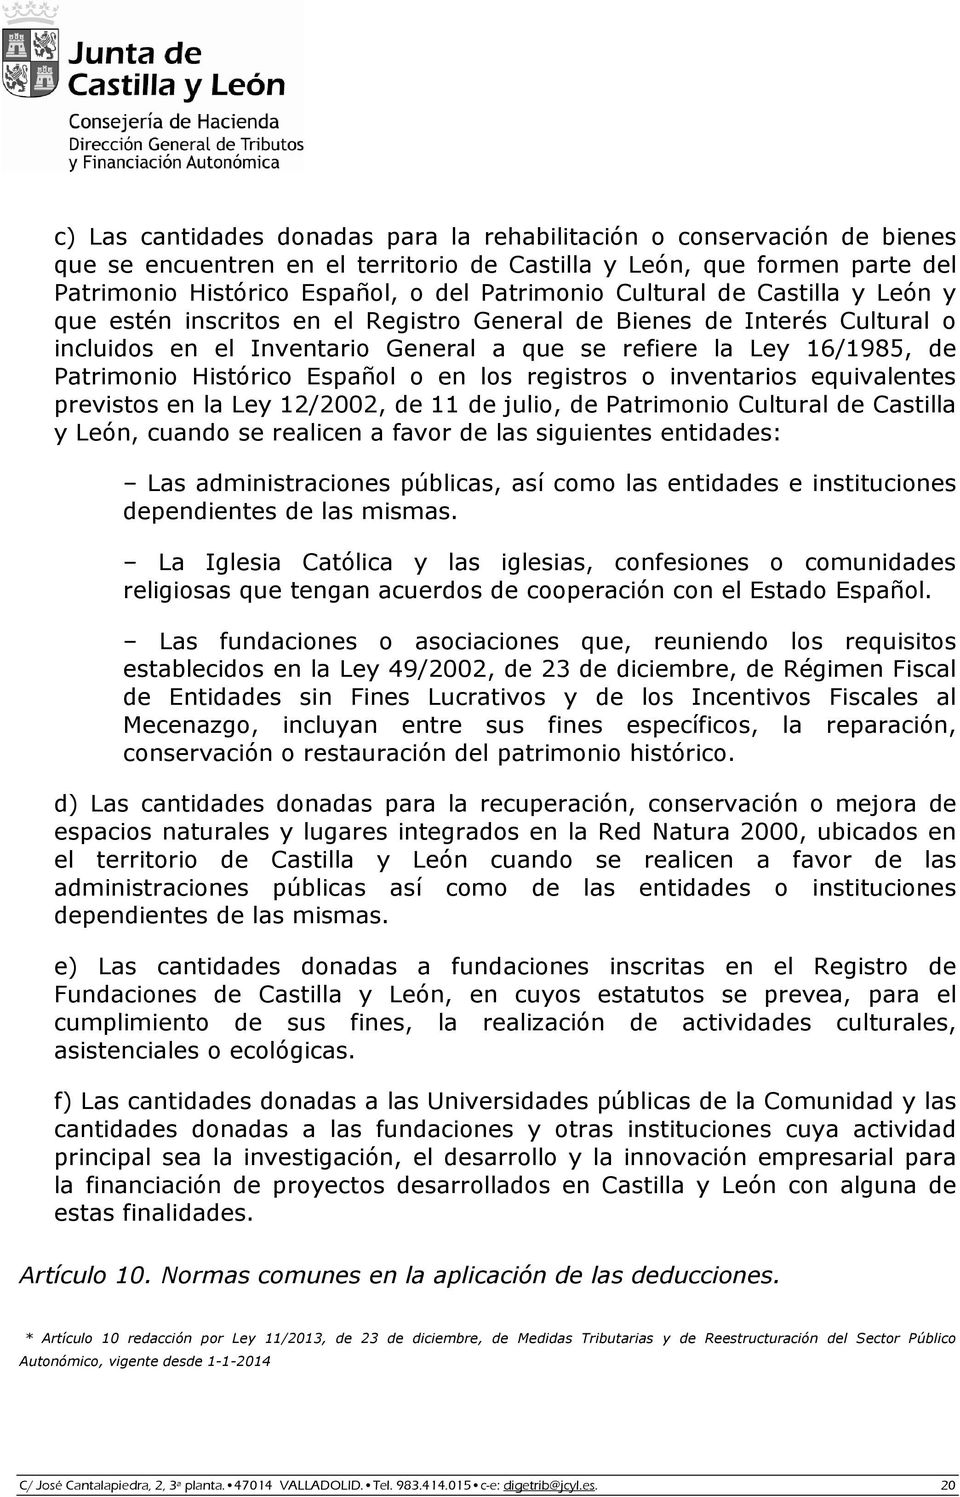 Español o en los registros o inventarios equivalentes previstos en la Ley 12/2002, de 11 de julio, de Patrimonio Cultural de Castilla y León, cuando se realicen a favor de las siguientes entidades: